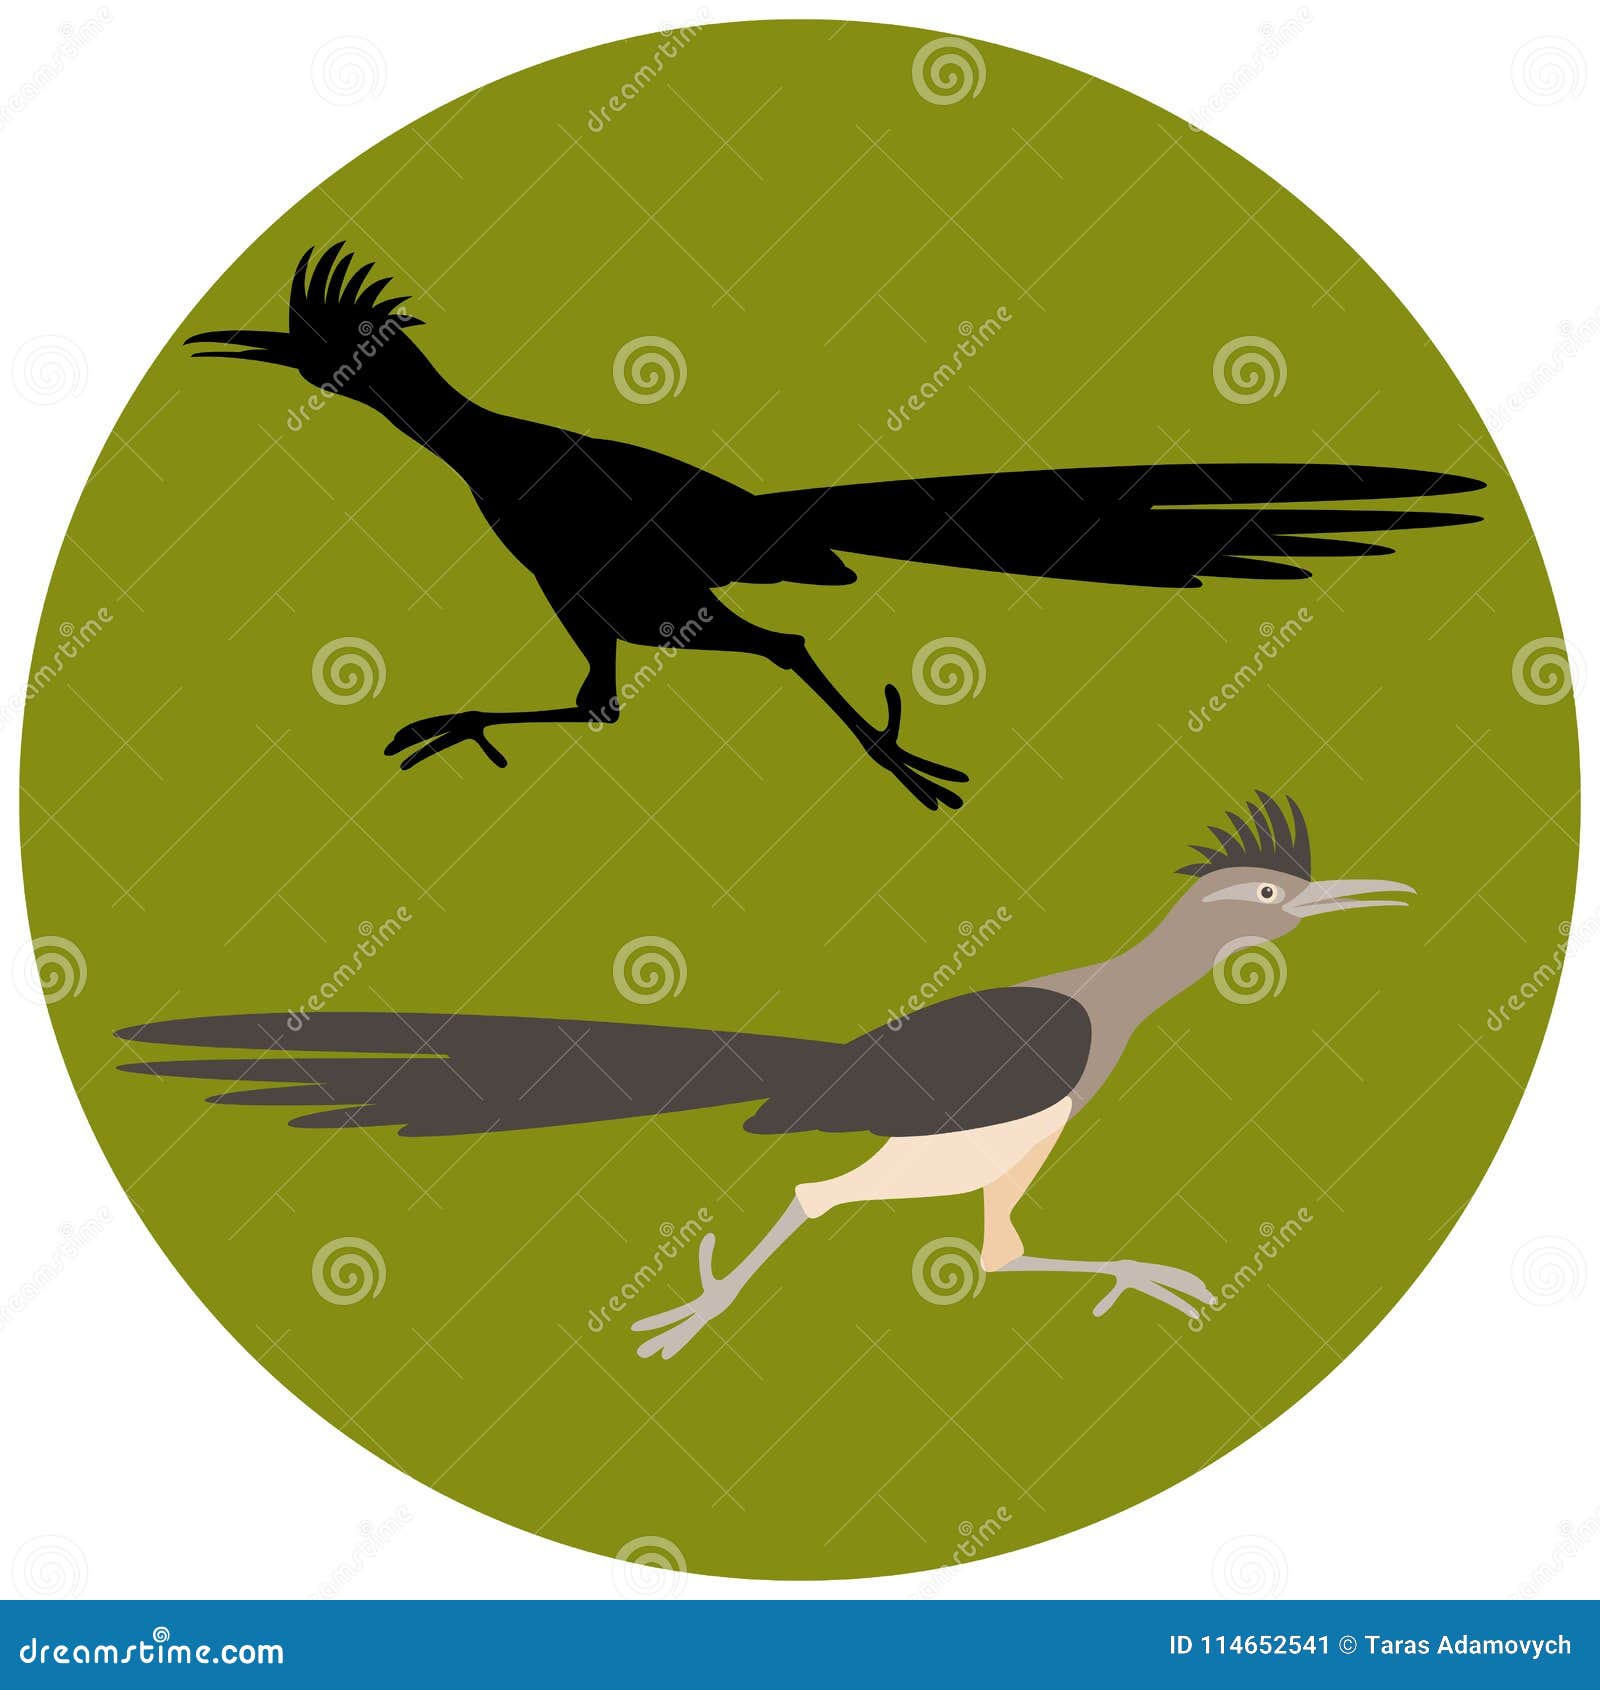 roadrunner bird running   flat style black silhouette